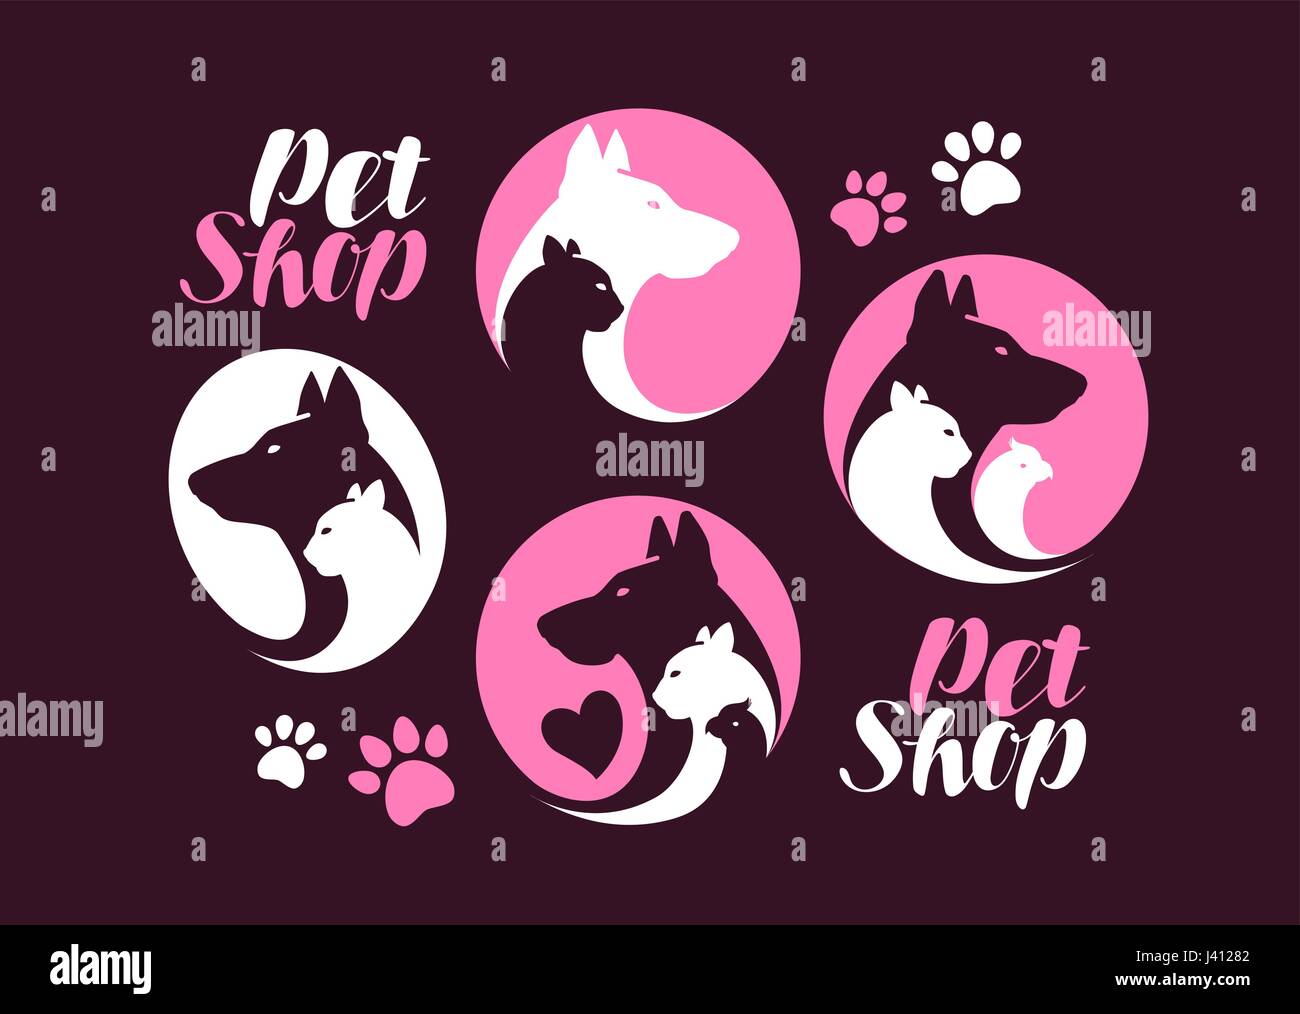 Tierhandlung, Satz zu kennzeichnen. Hund, Katze, Papagei, tierische Symbol oder Logo. Vektor-illustration Stock Vektor